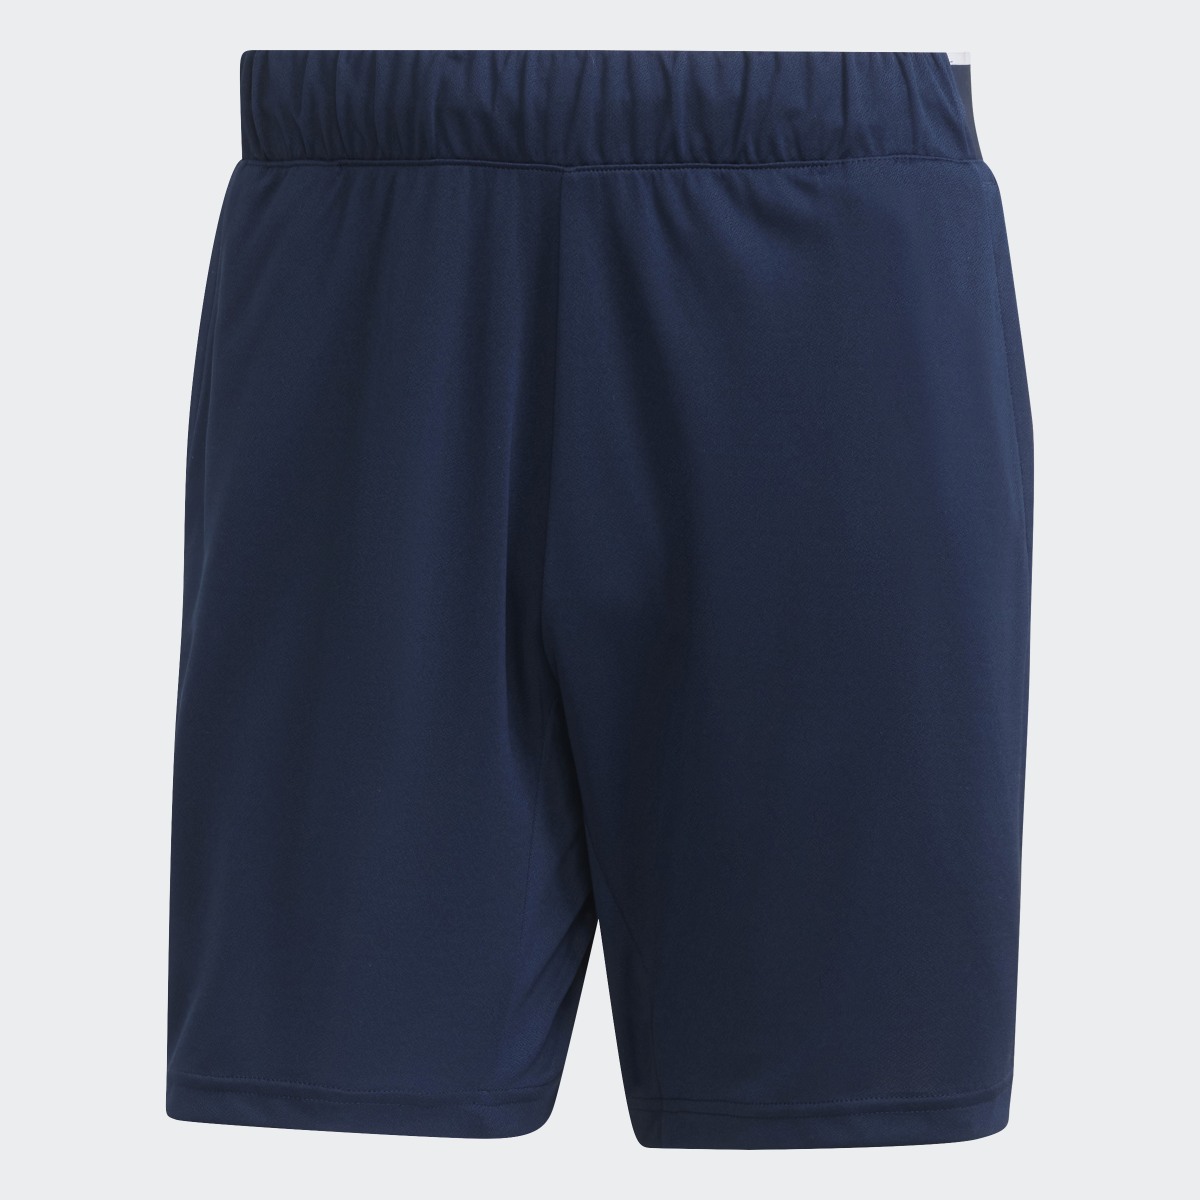 Adidas HEAT.RDY Knit Tennis Shorts. 4